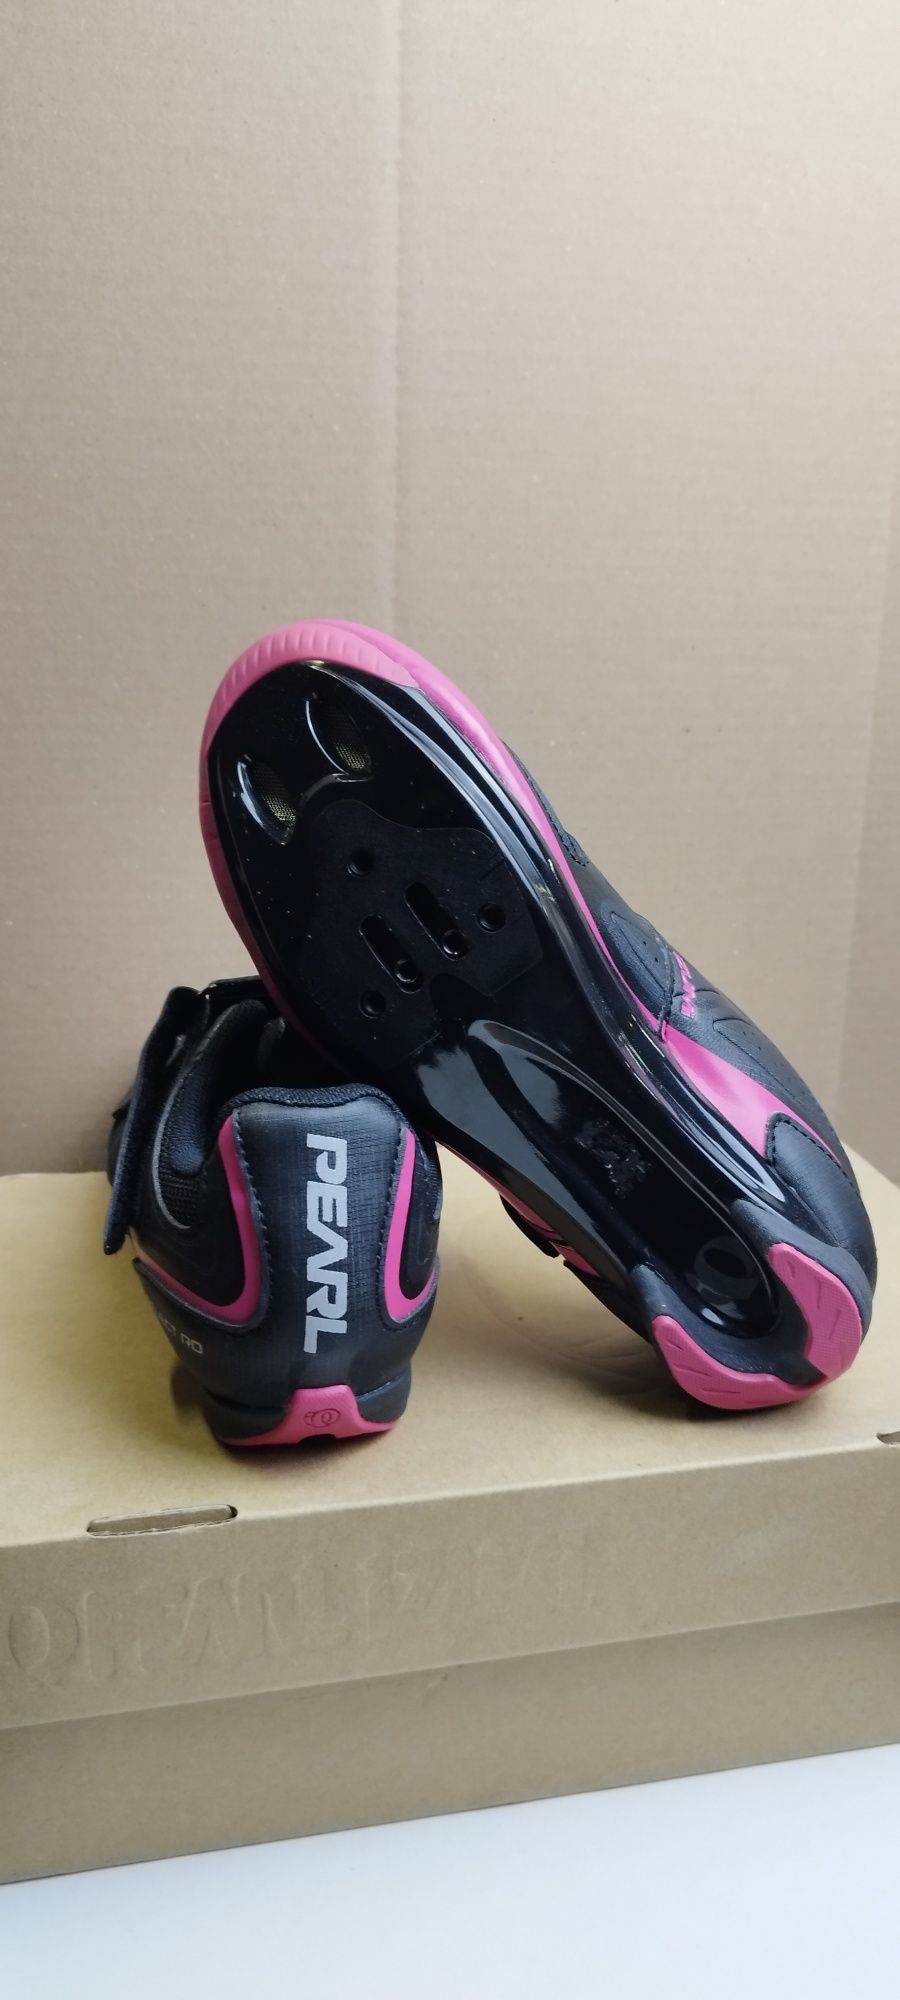 Nowe buty szosowe Pearl Izumi rozmiar 39 (24,5cm)